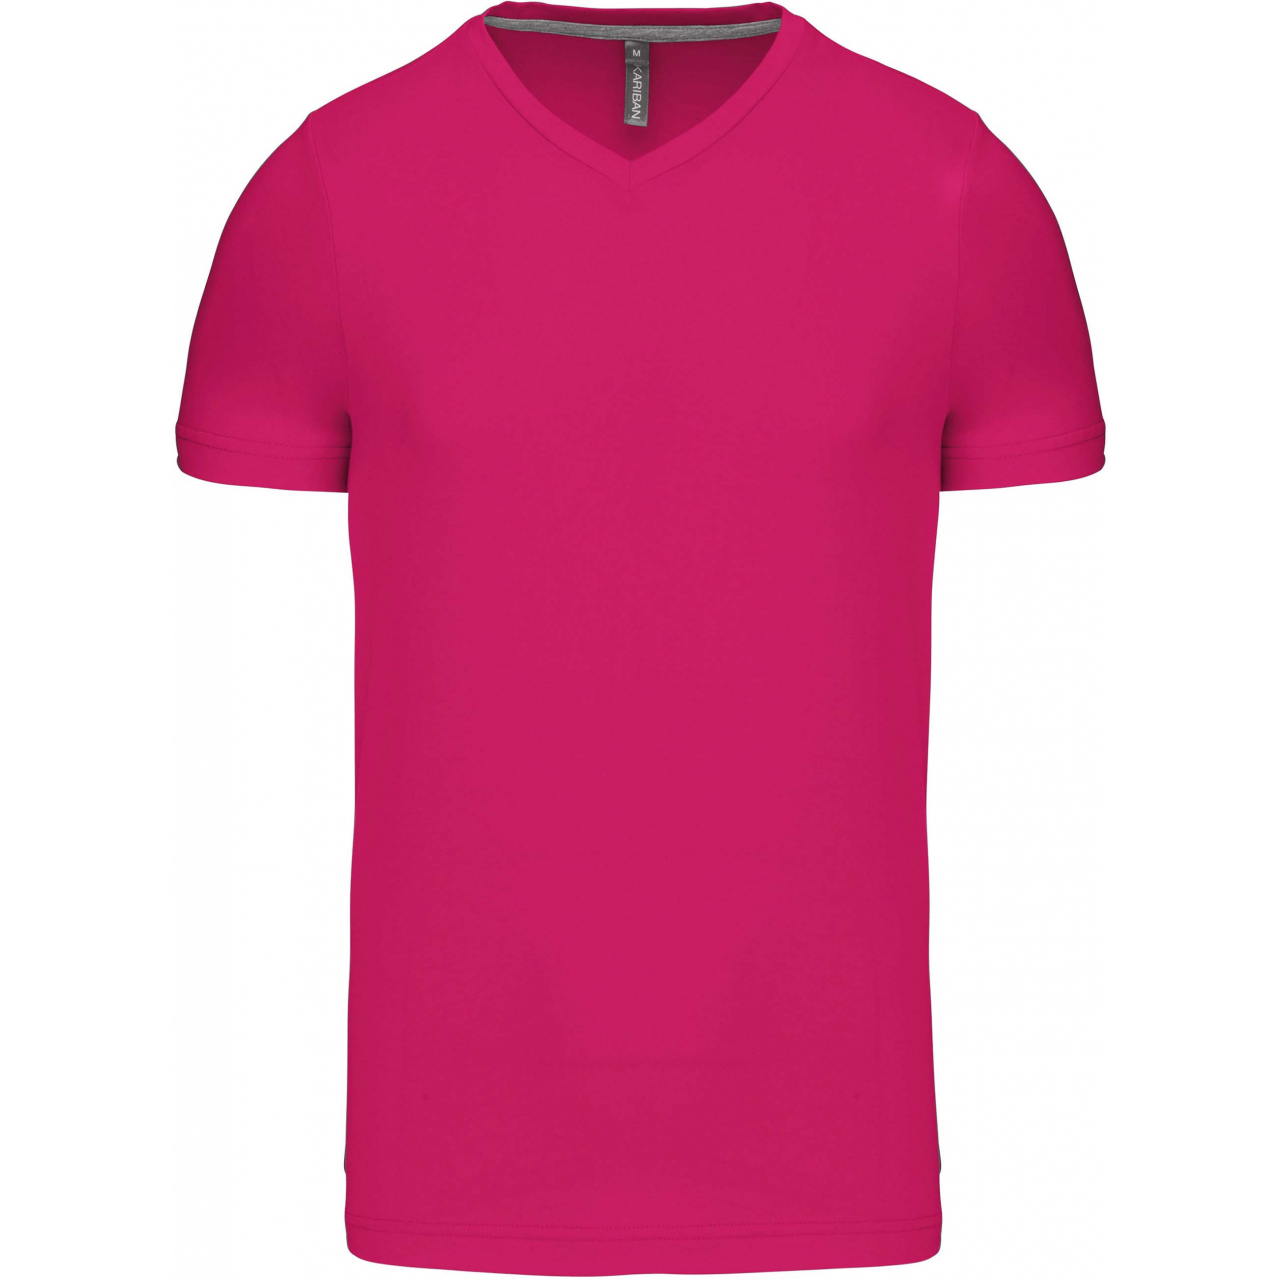 Pánské tričko Kariban krátký rukáv V-neck - růžové, M